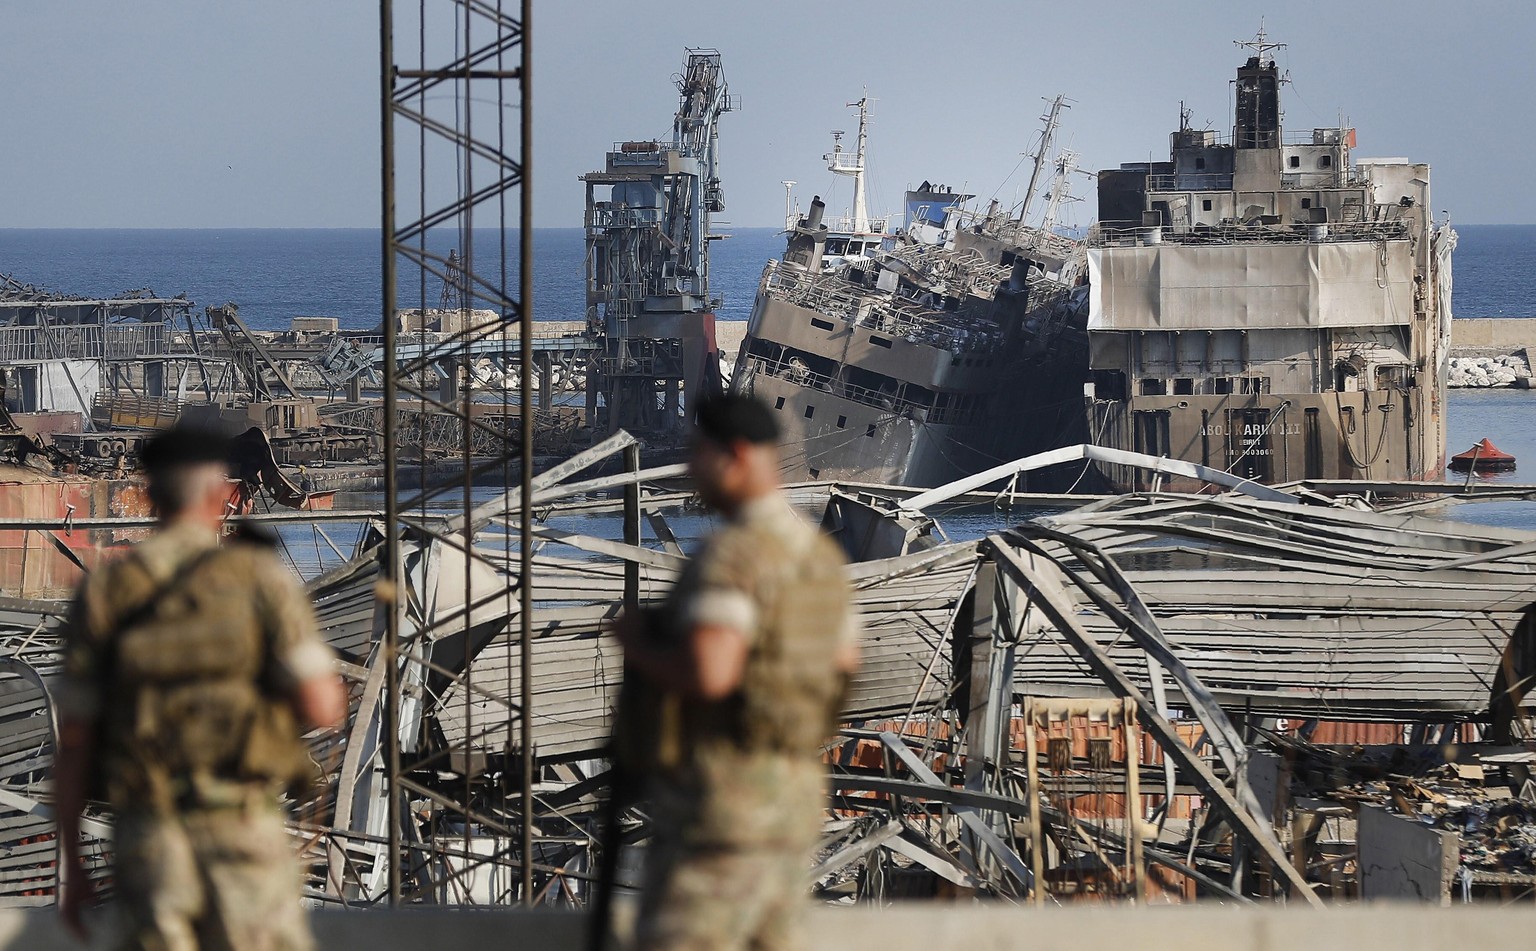 Libanesische Sicherheitskräfte stehen vor Schiffswracks im Hafen von Beirut. Das Amoniumnitrat, das mutmaßlich für die Explosion verantwortlich ist, kam auf der "Rhosus" in den Libanon.